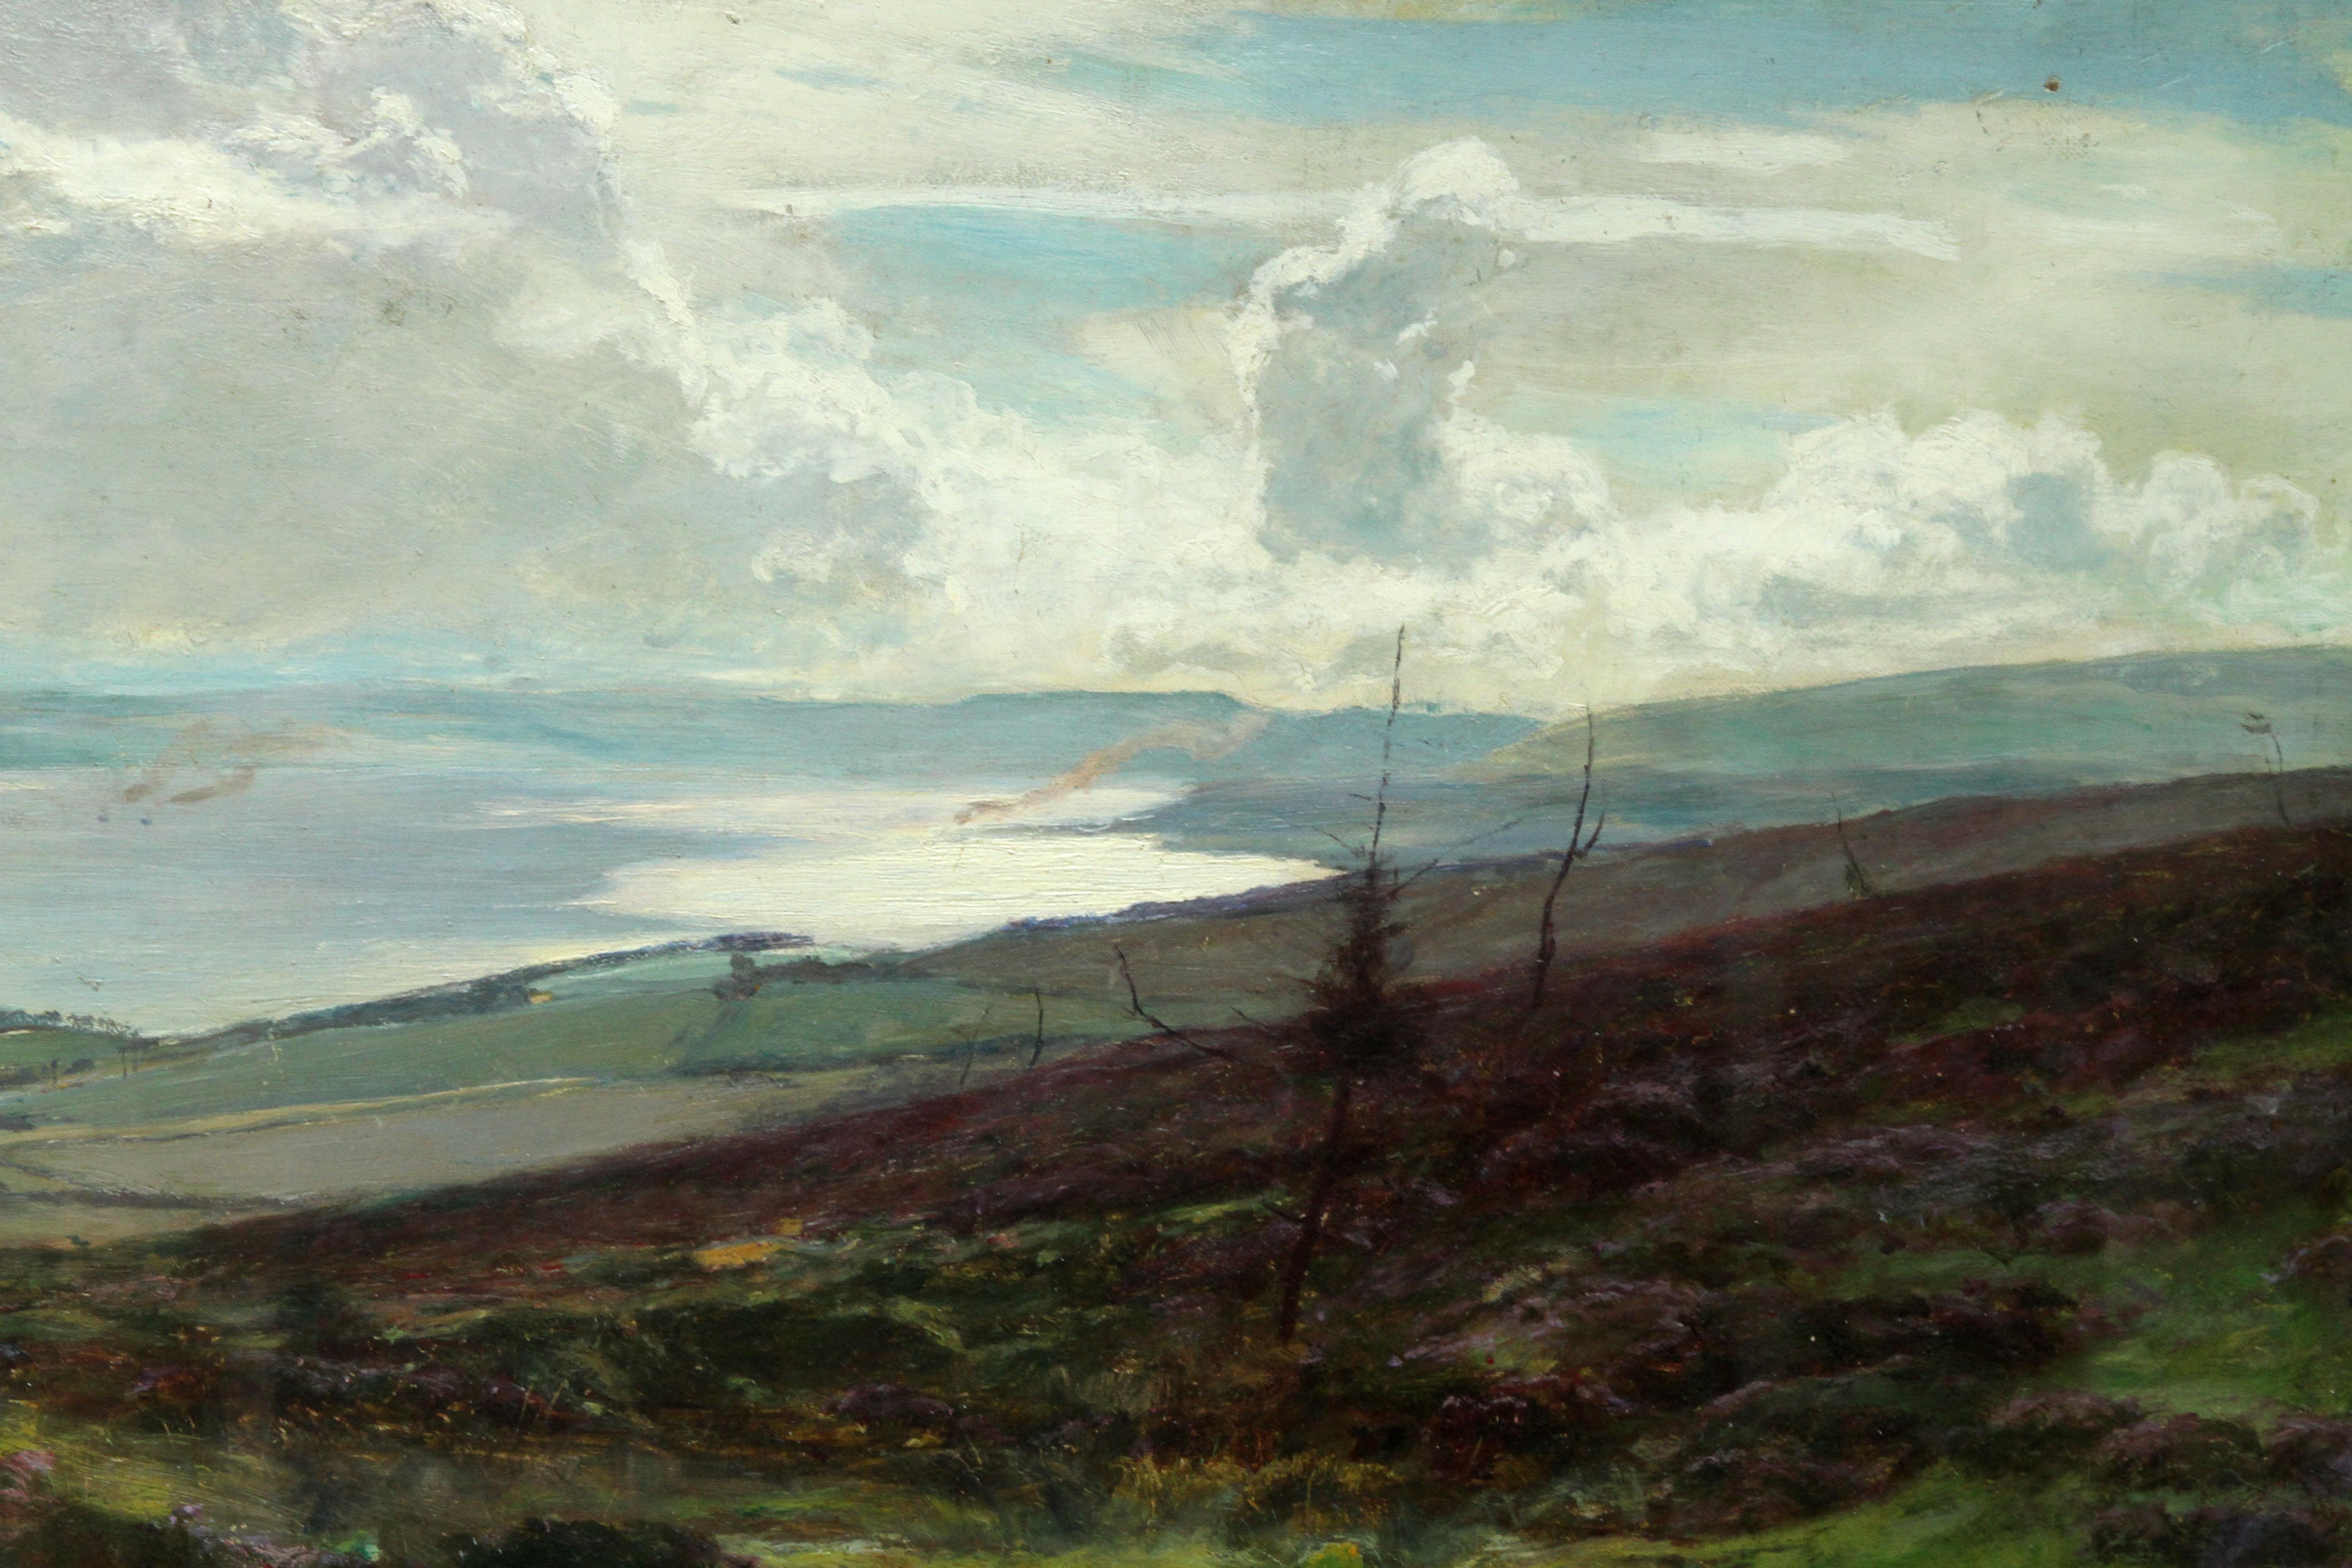 Dieses atemberaubende, ausgestellte viktorianische Panorama der schottischen Landschaft stammt von dem bekannten schottischen Künstler Sir David Murray. Es wurde gemalt und 1881 in der Royal Scottish Academy unter der Nummer 514 